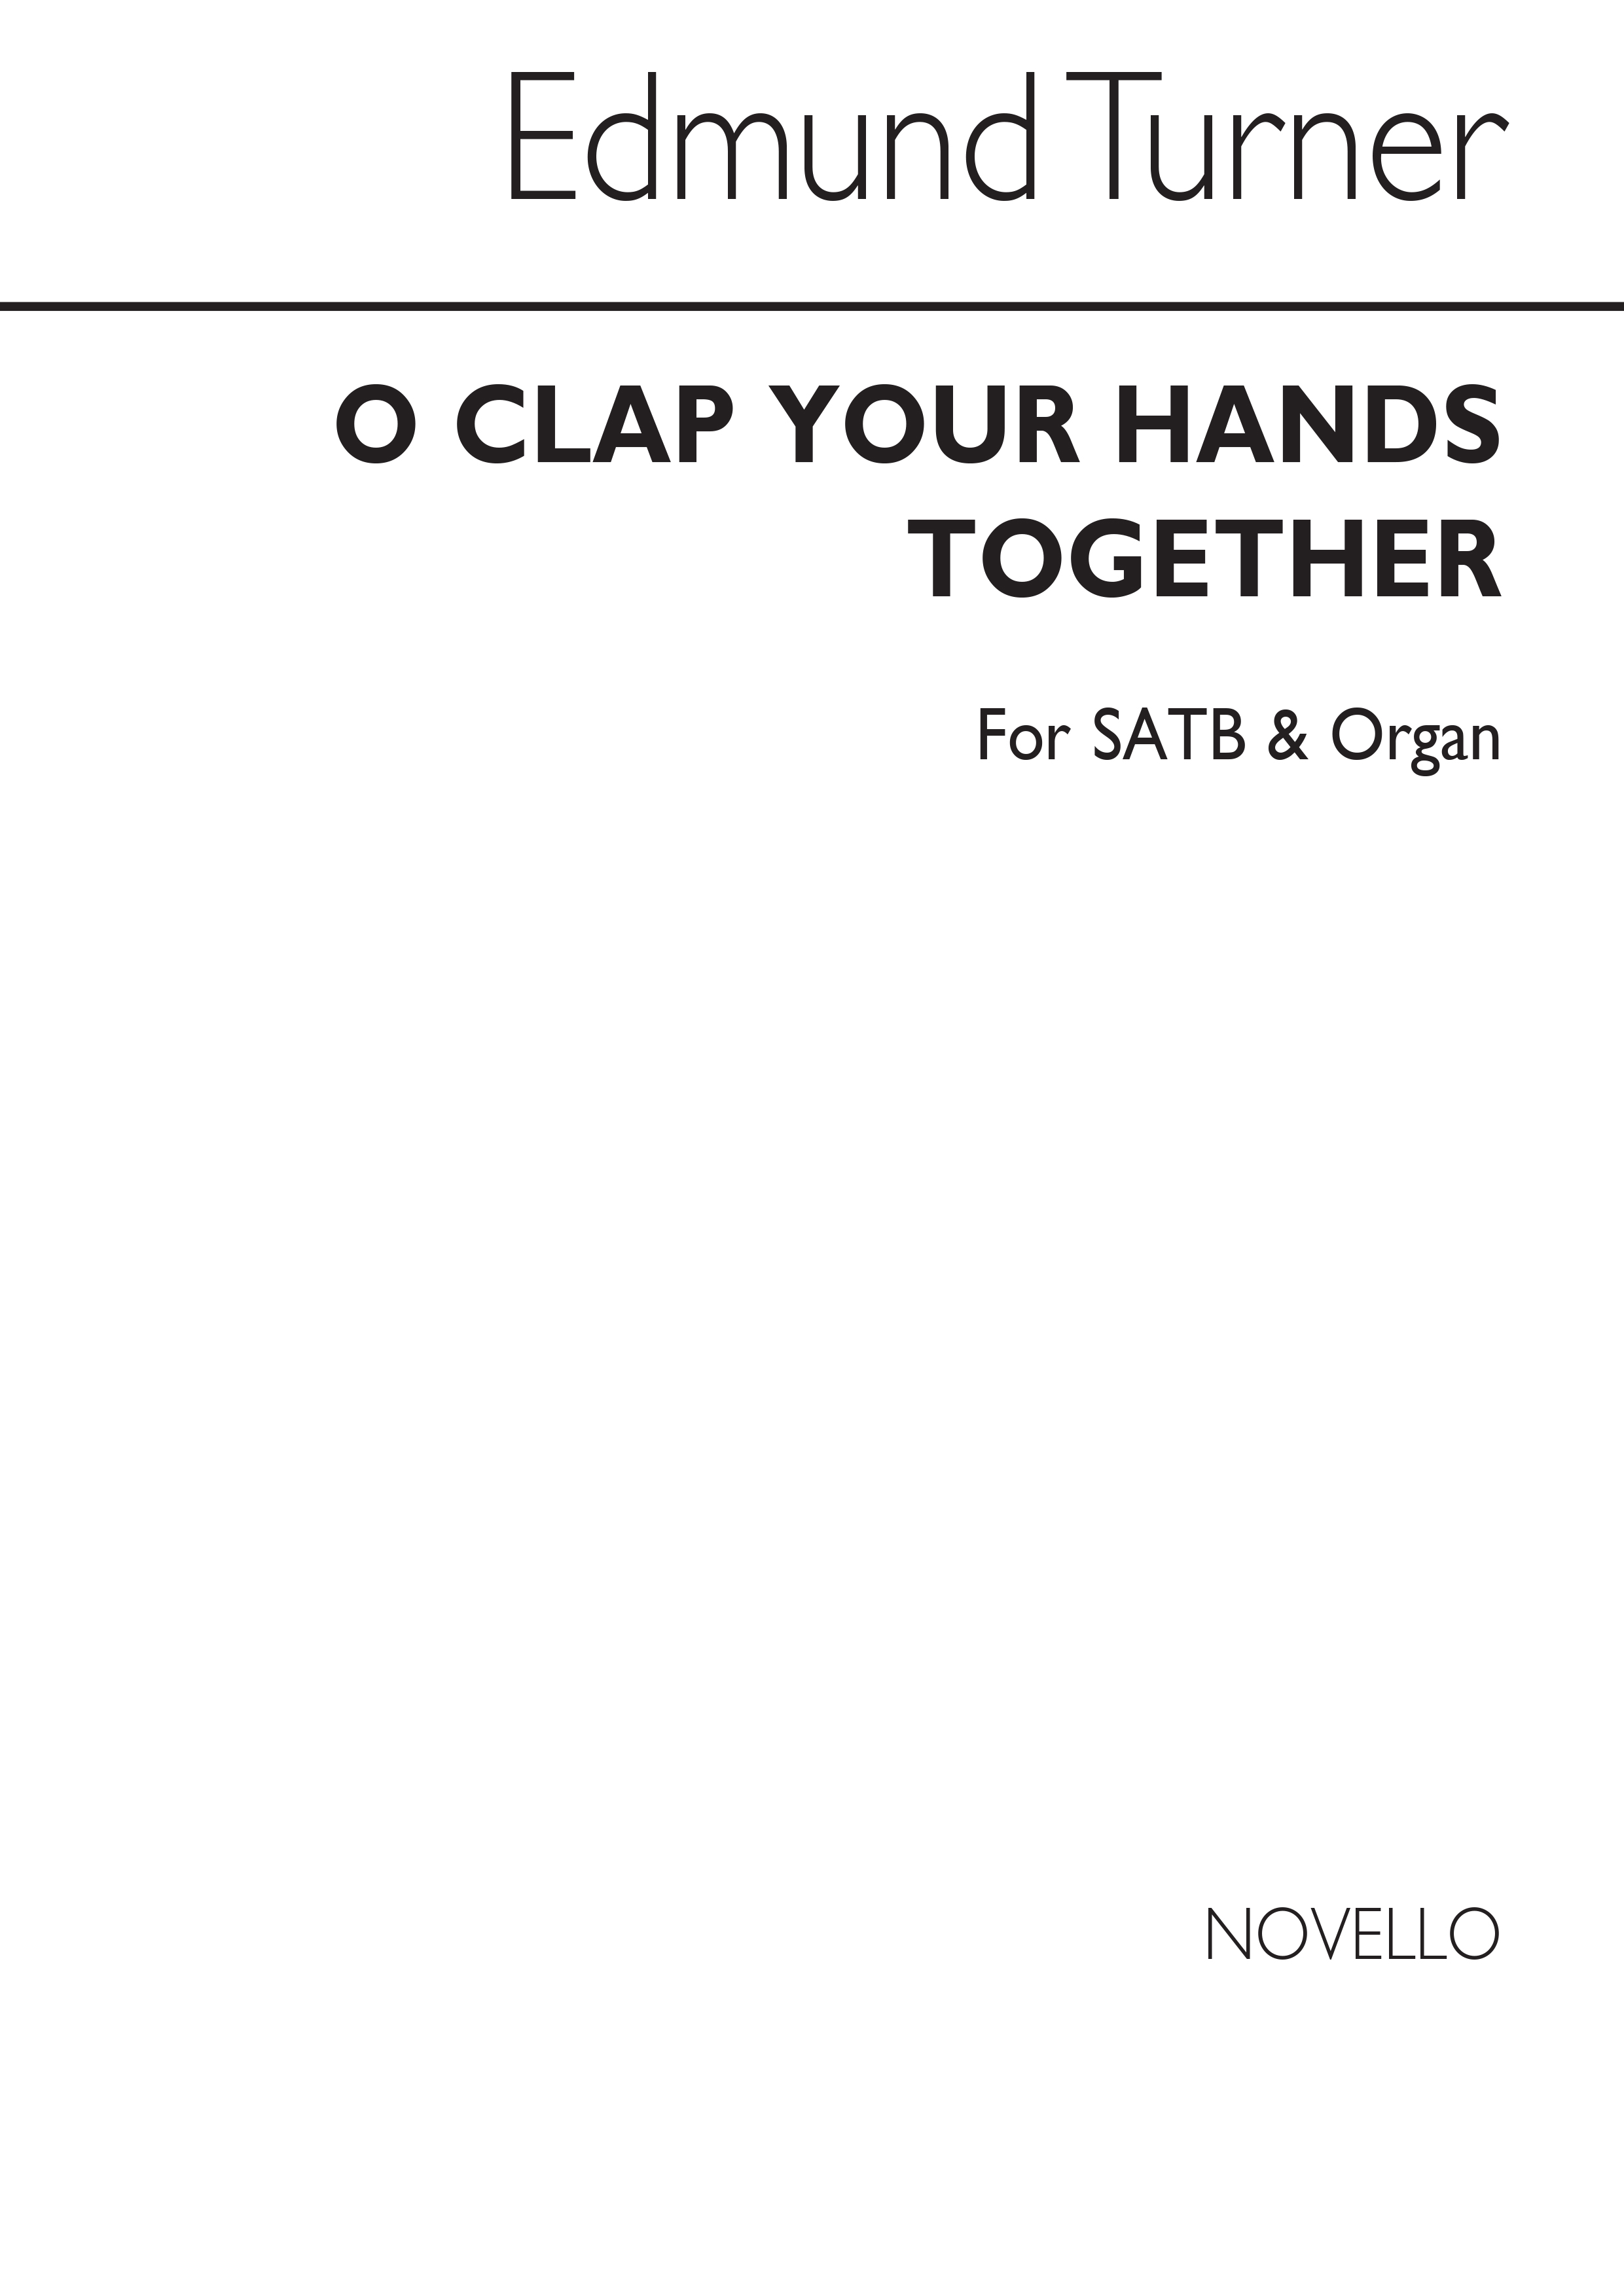 Edmund Turner: O Clap Your Hands Together Satb/Organ